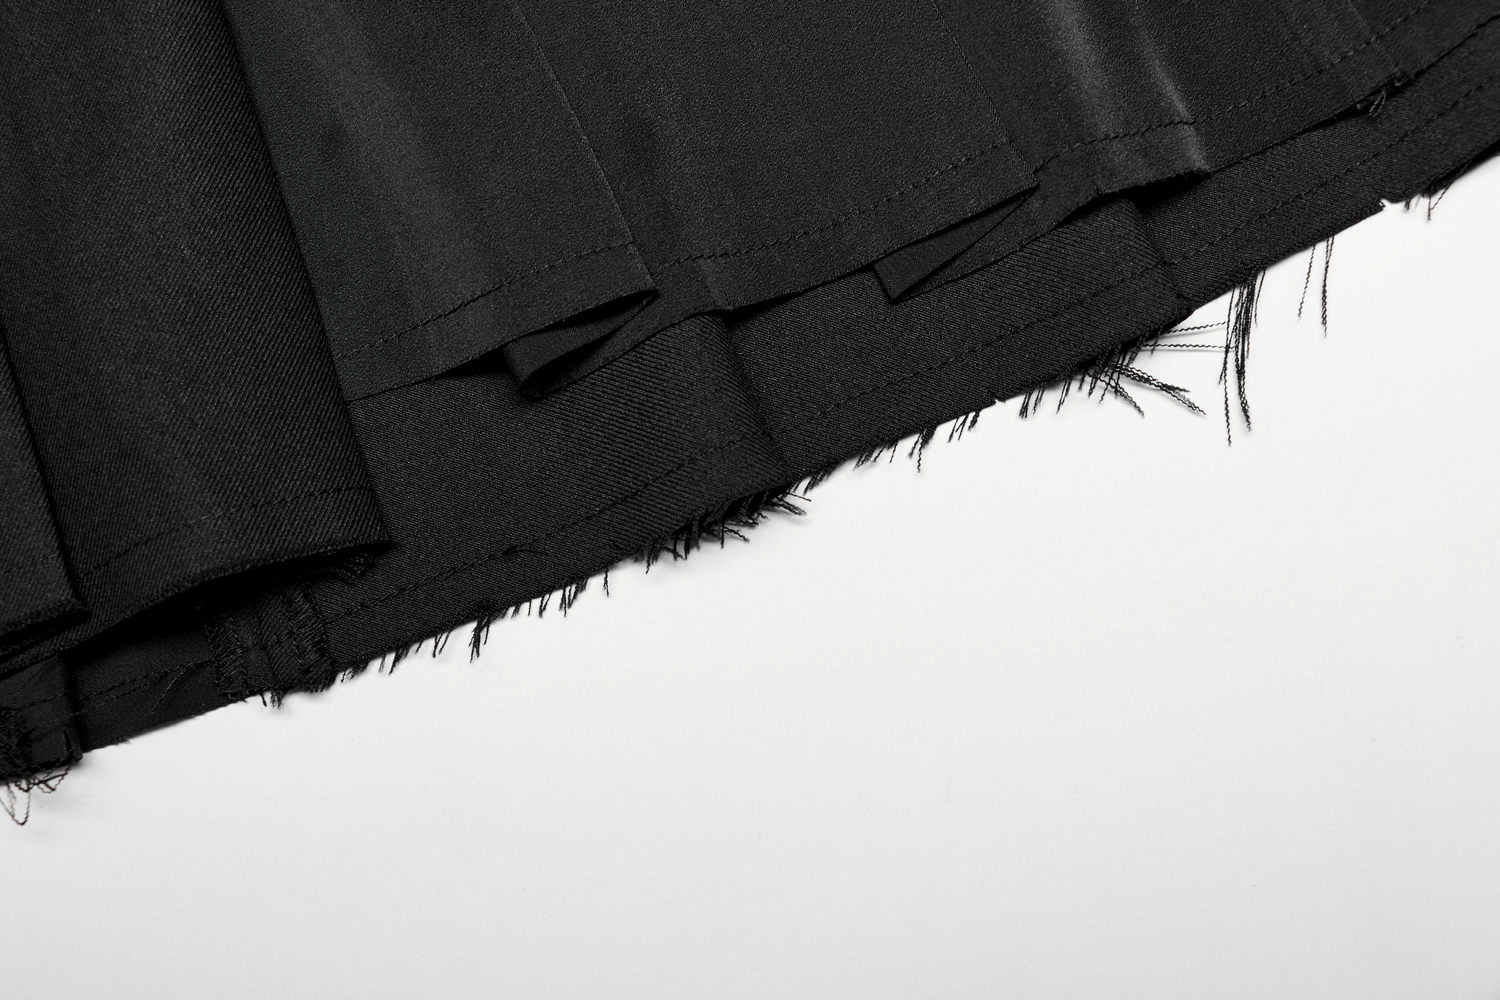 Stylish Black Paneled Pleated Skirt with Raw Hem